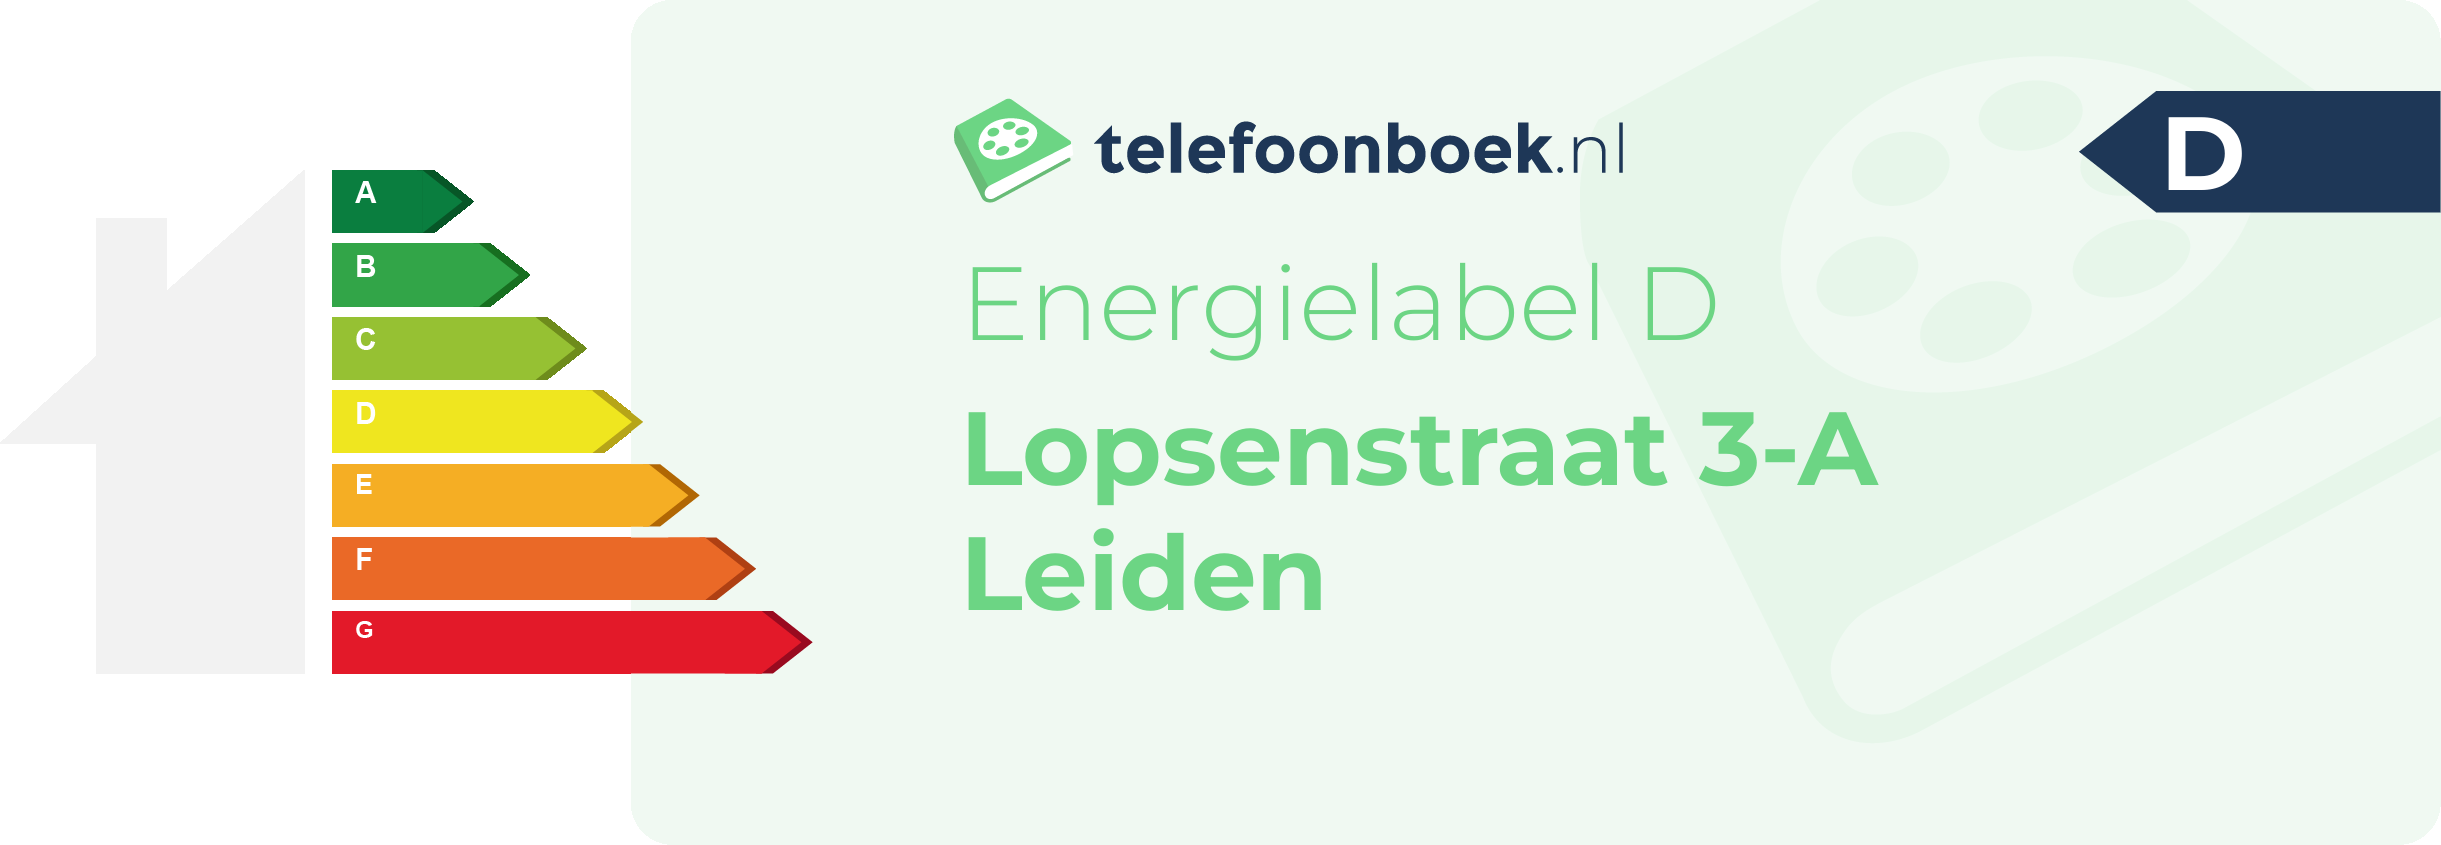 Energielabel Lopsenstraat 3-A Leiden